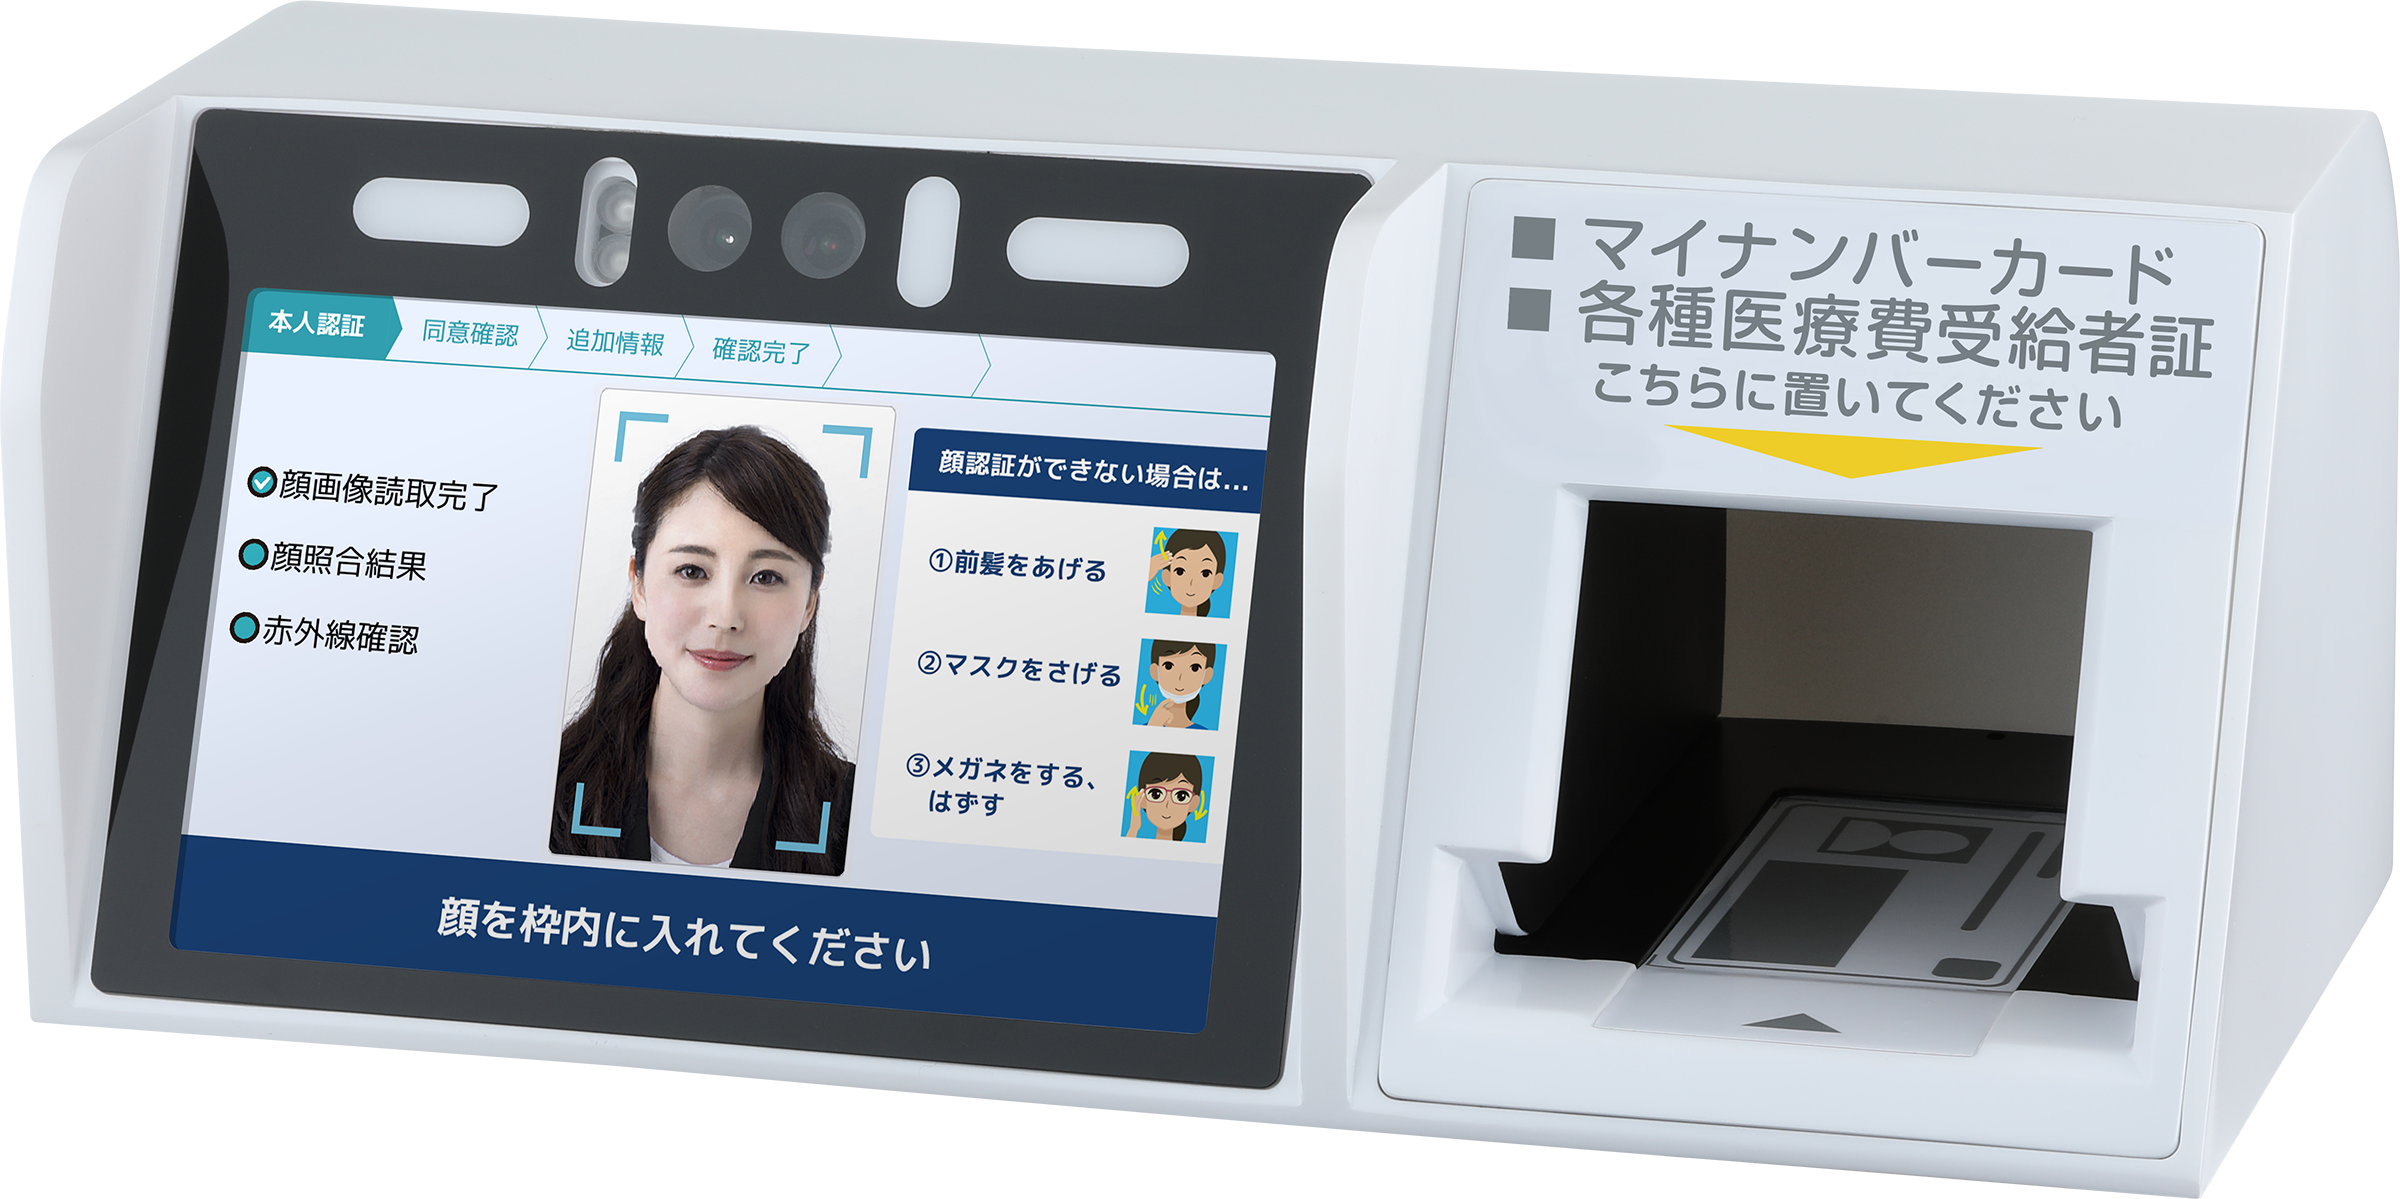 オンライン資格確認対応顔認証付きカードリーダー「マイナタッチ」の開発